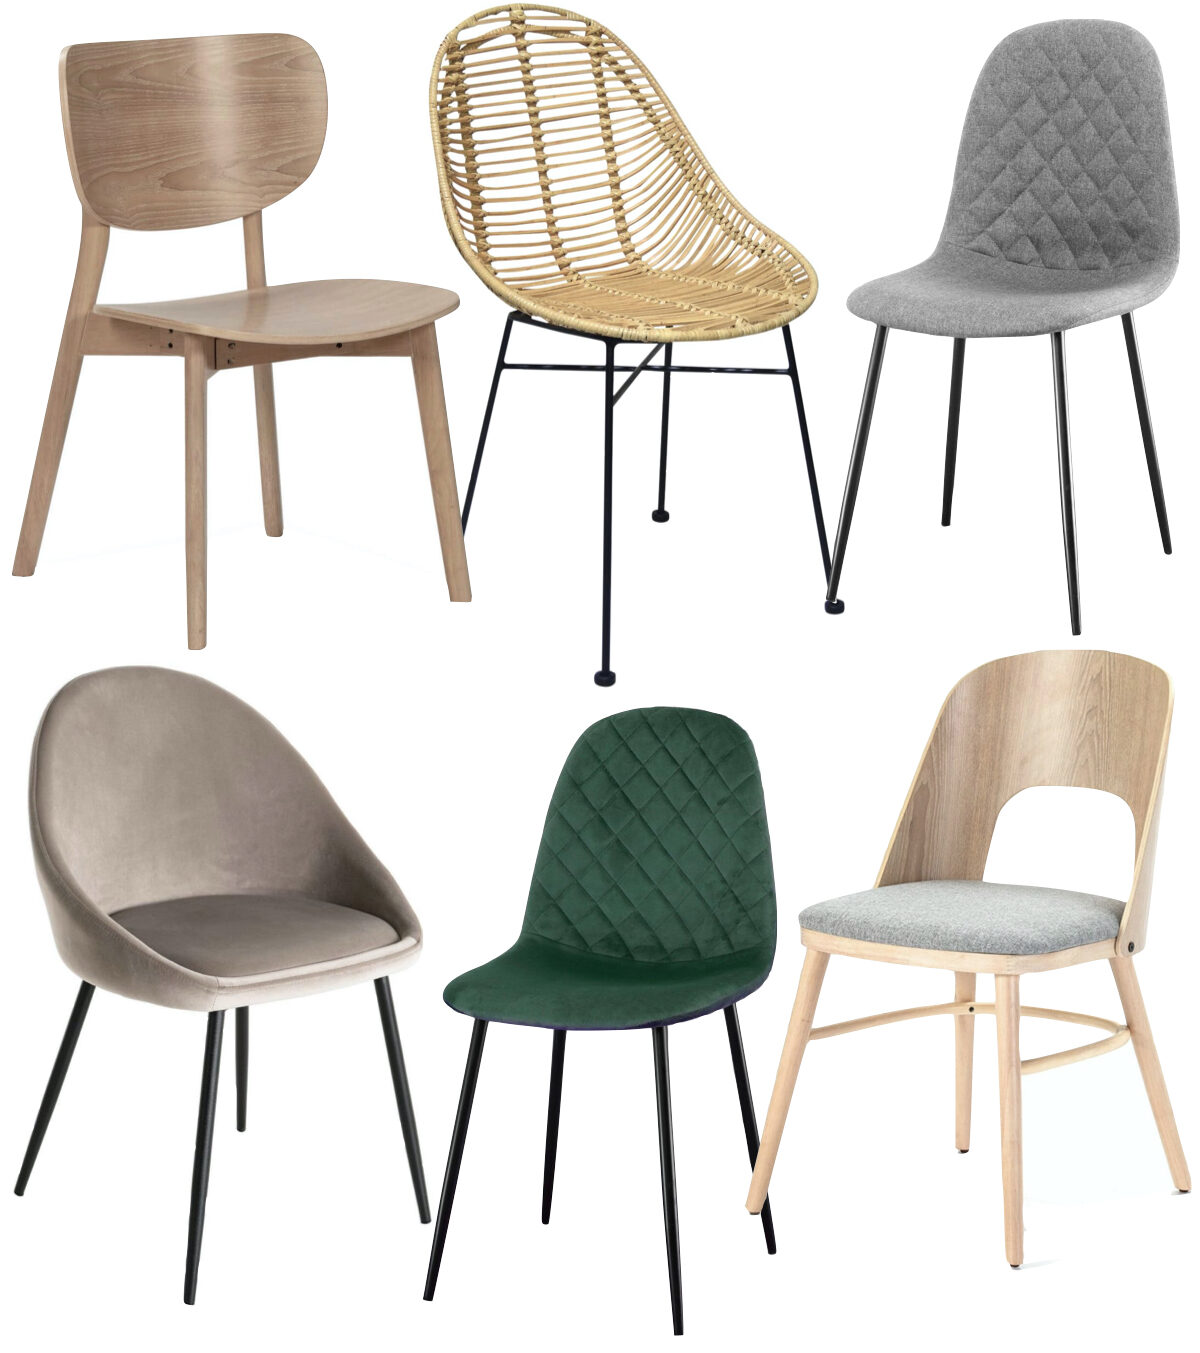 Comment assortir les chaises dépareillées autour d'une table velours gris vert rotin bois scandinave